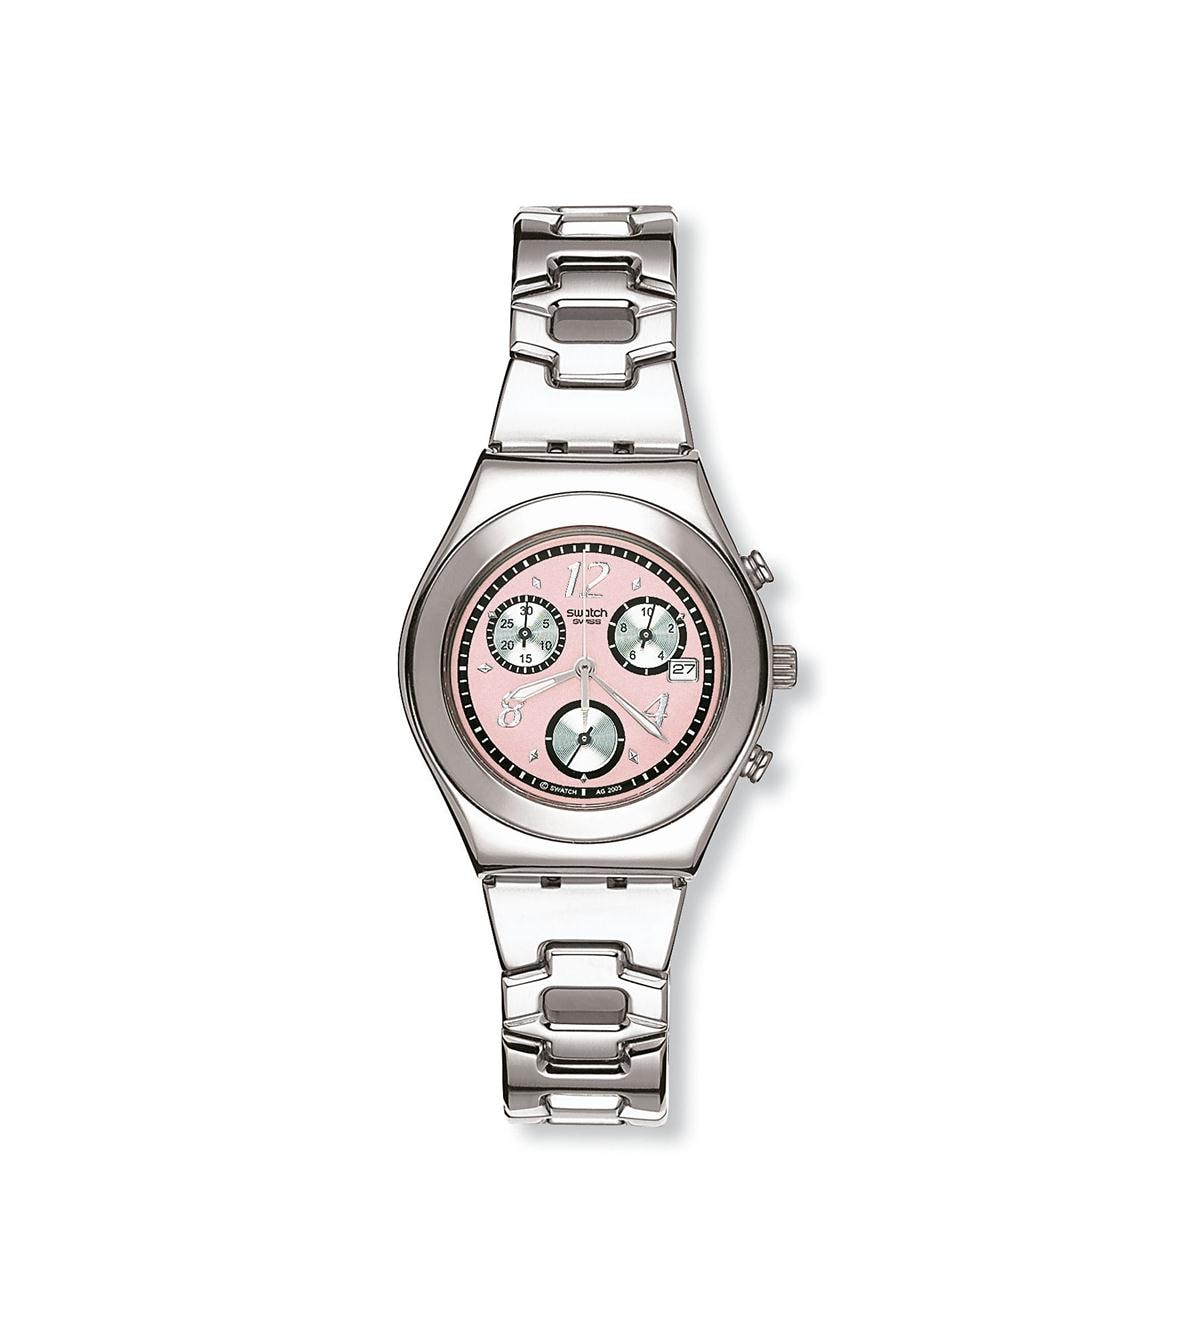 Каталог часов свотч. Часы свотч. Свотч женские. Часы свотч с металлическим ремешком. Swatch часы женские металлический браслет.